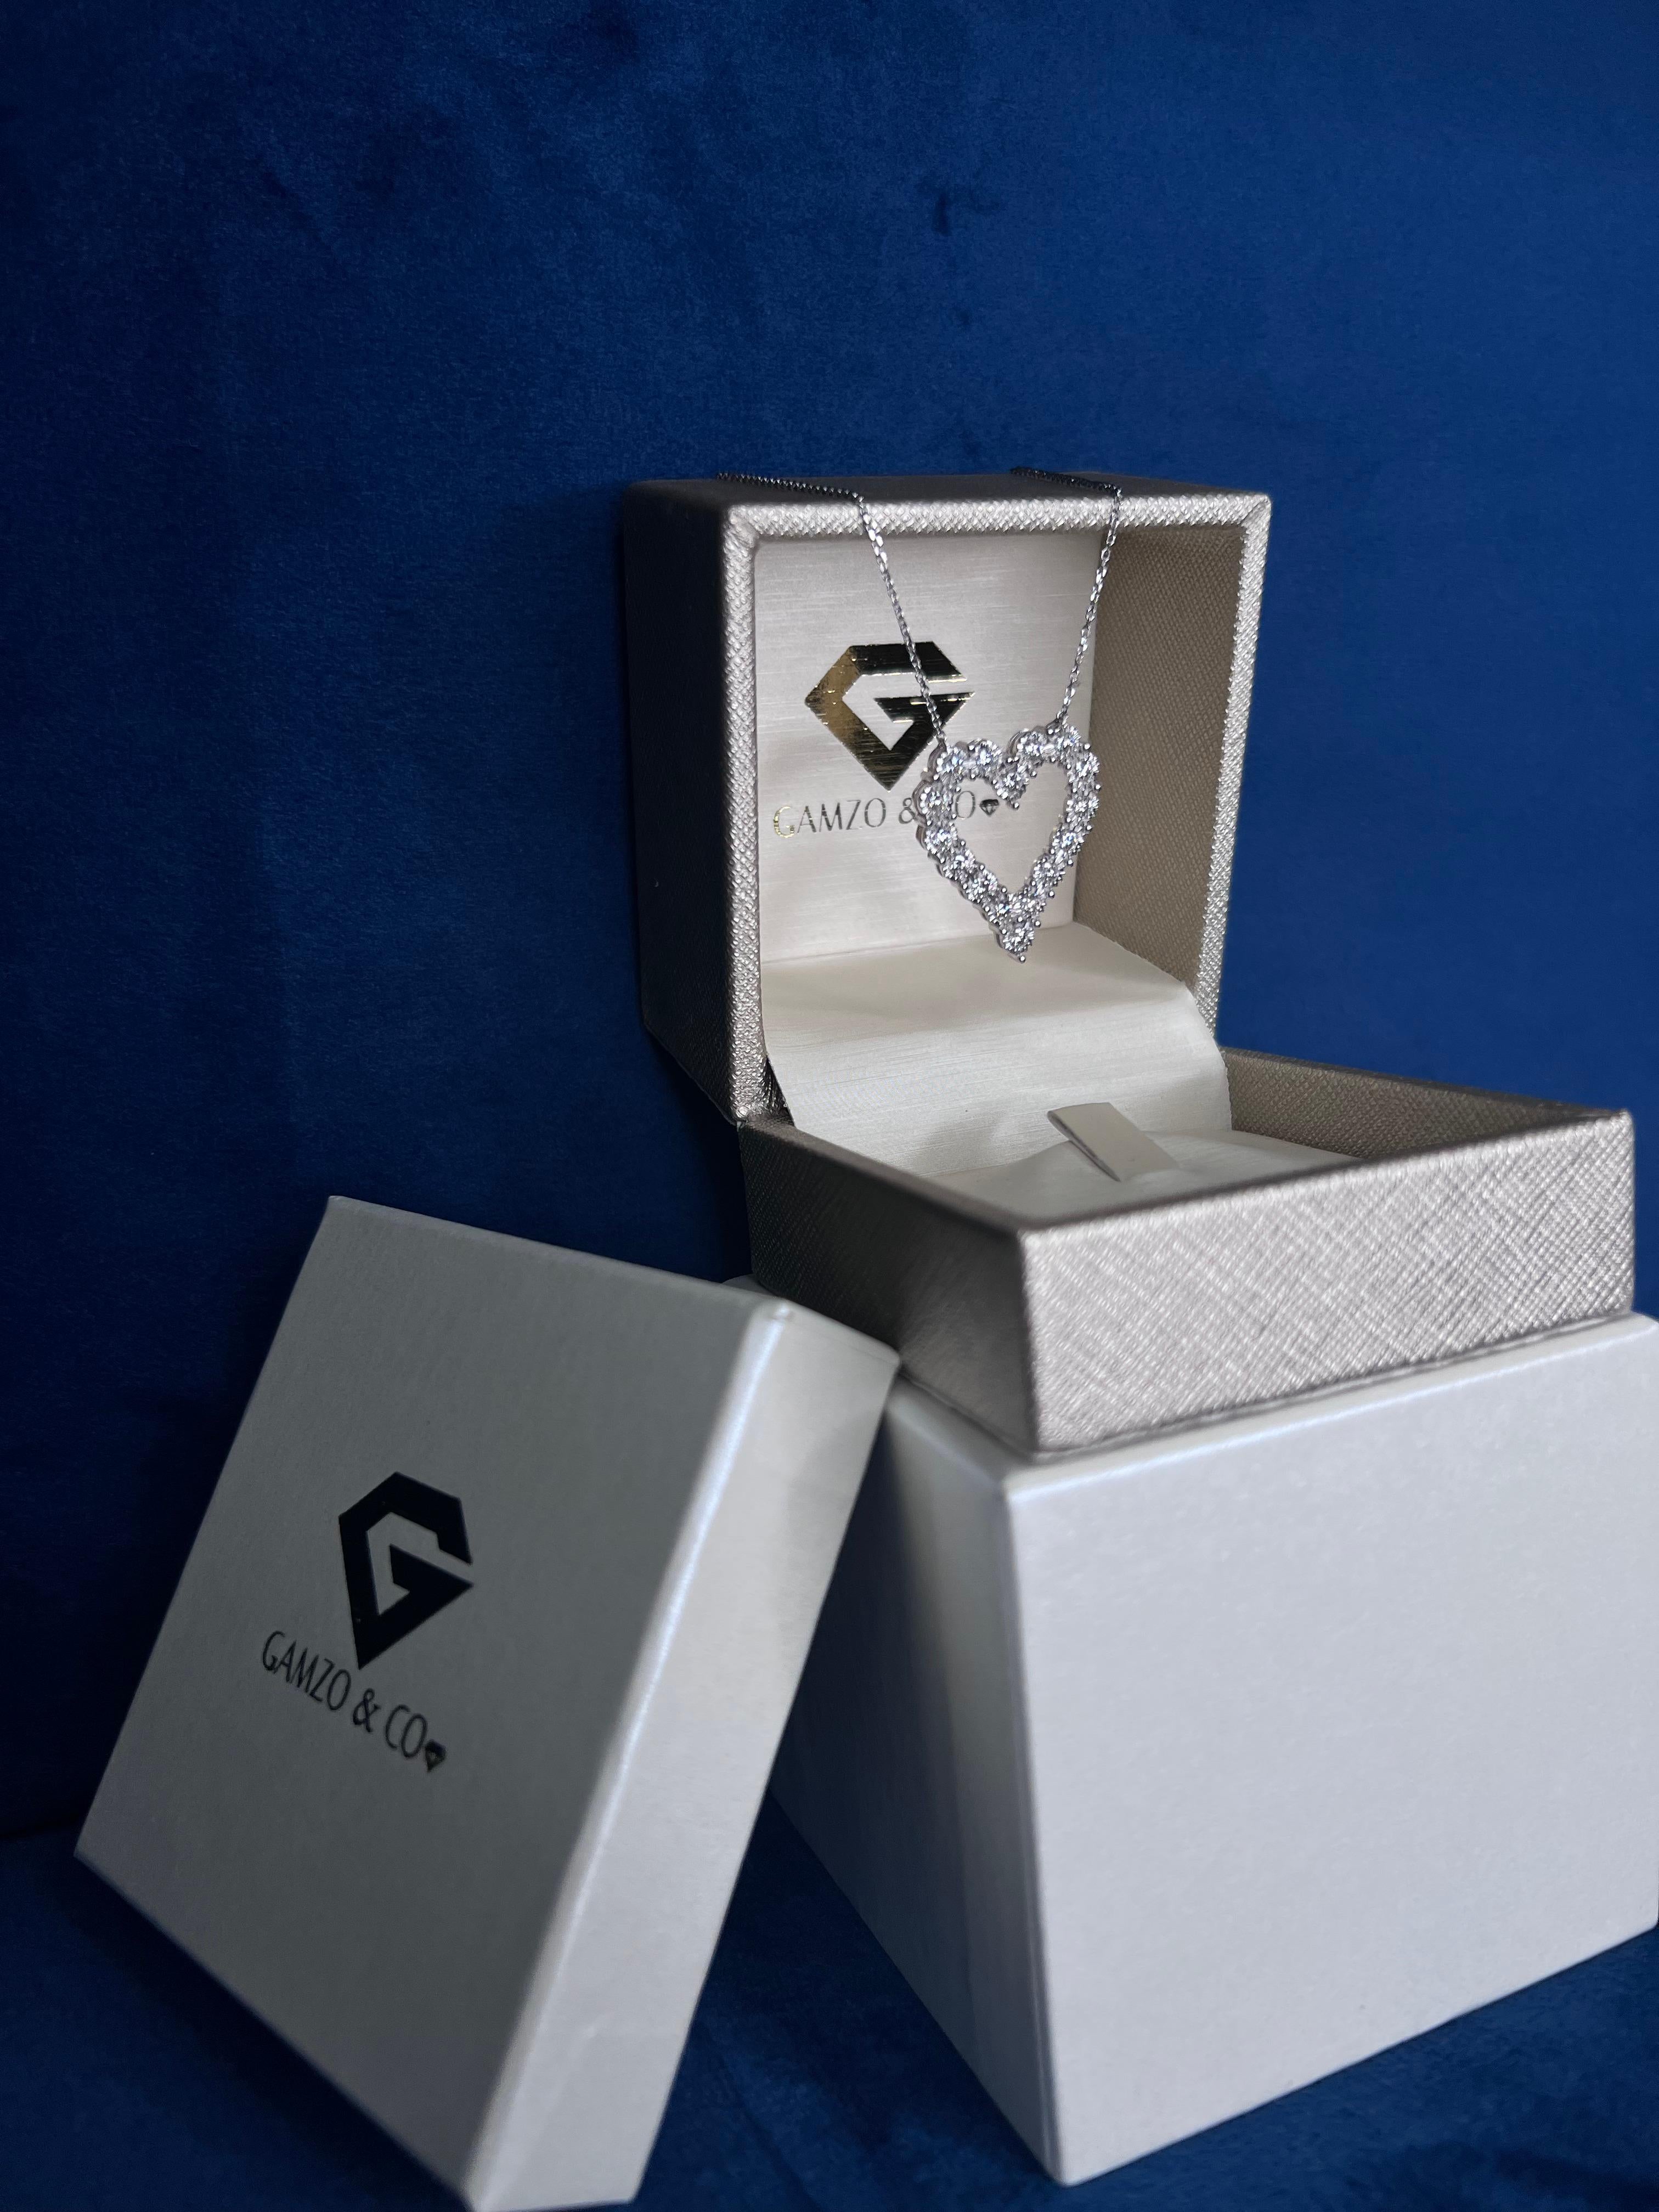 Diese Herz-Diamant-Halskette sorgt für einen niedlichen und modischen Trend-Look. 

Metall: 14k Gold
Diamant-Schliff: Rund
Diamant Karat gesamt: 0.75 Karat
Diamant Reinheit: VS
Diamant-Farbe: F
Länge der Halskette: 24 Zoll
Farbe: Weißgold
Im